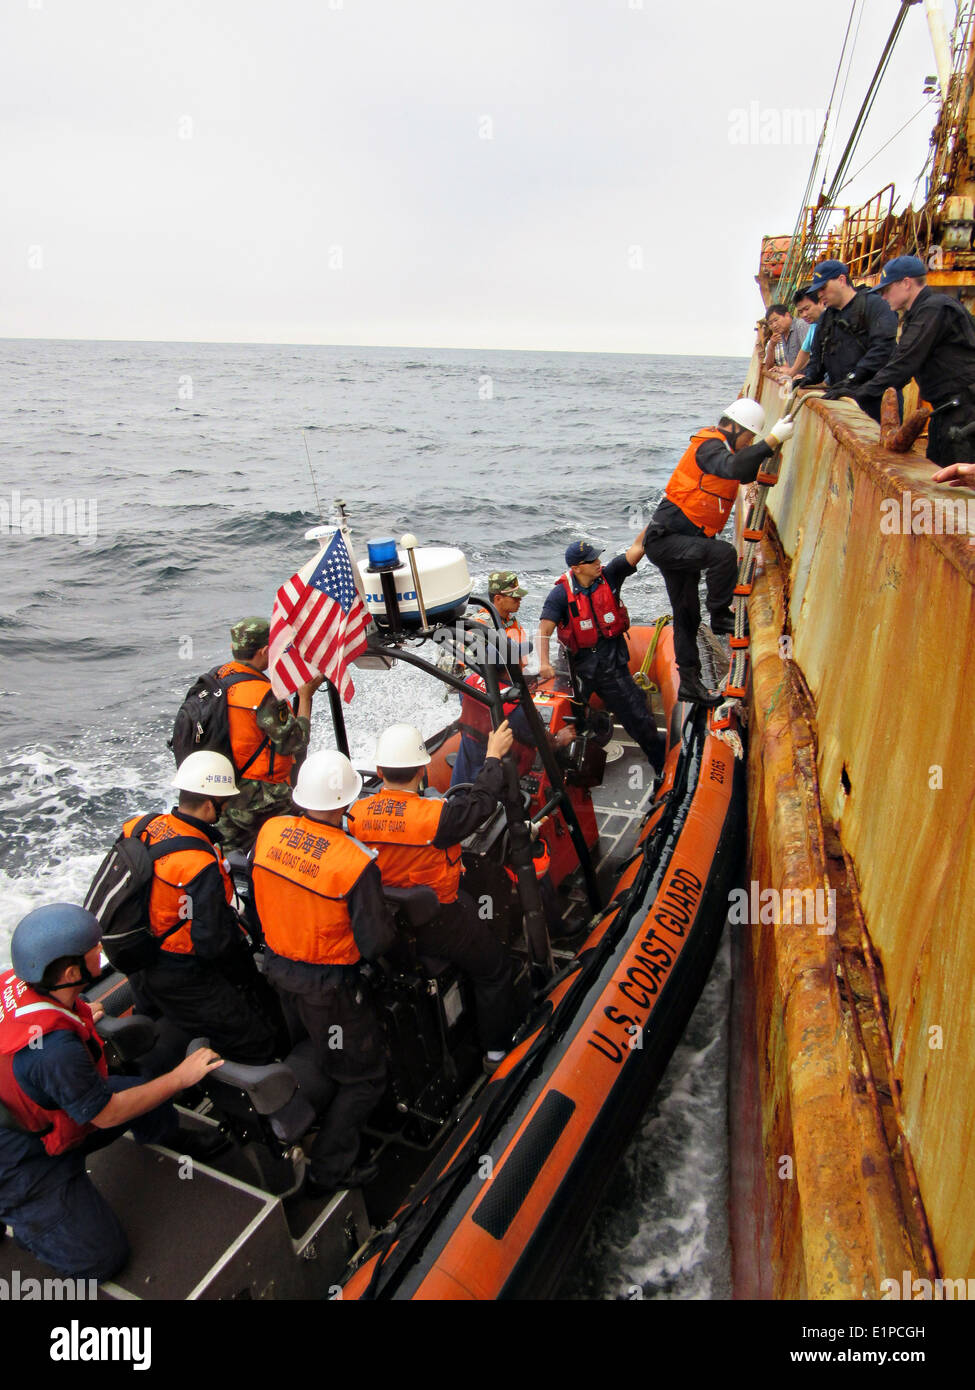 Garde-côte Morgenthau l'équipage et les membres de l'application des lois sur les pêches Chine conseil commande le navire de pêche Yin Yuan détenues pour la pêche illégale au filet dérivant dans l'océan Pacifique Nord le 3 juin 2014. Banque D'Images